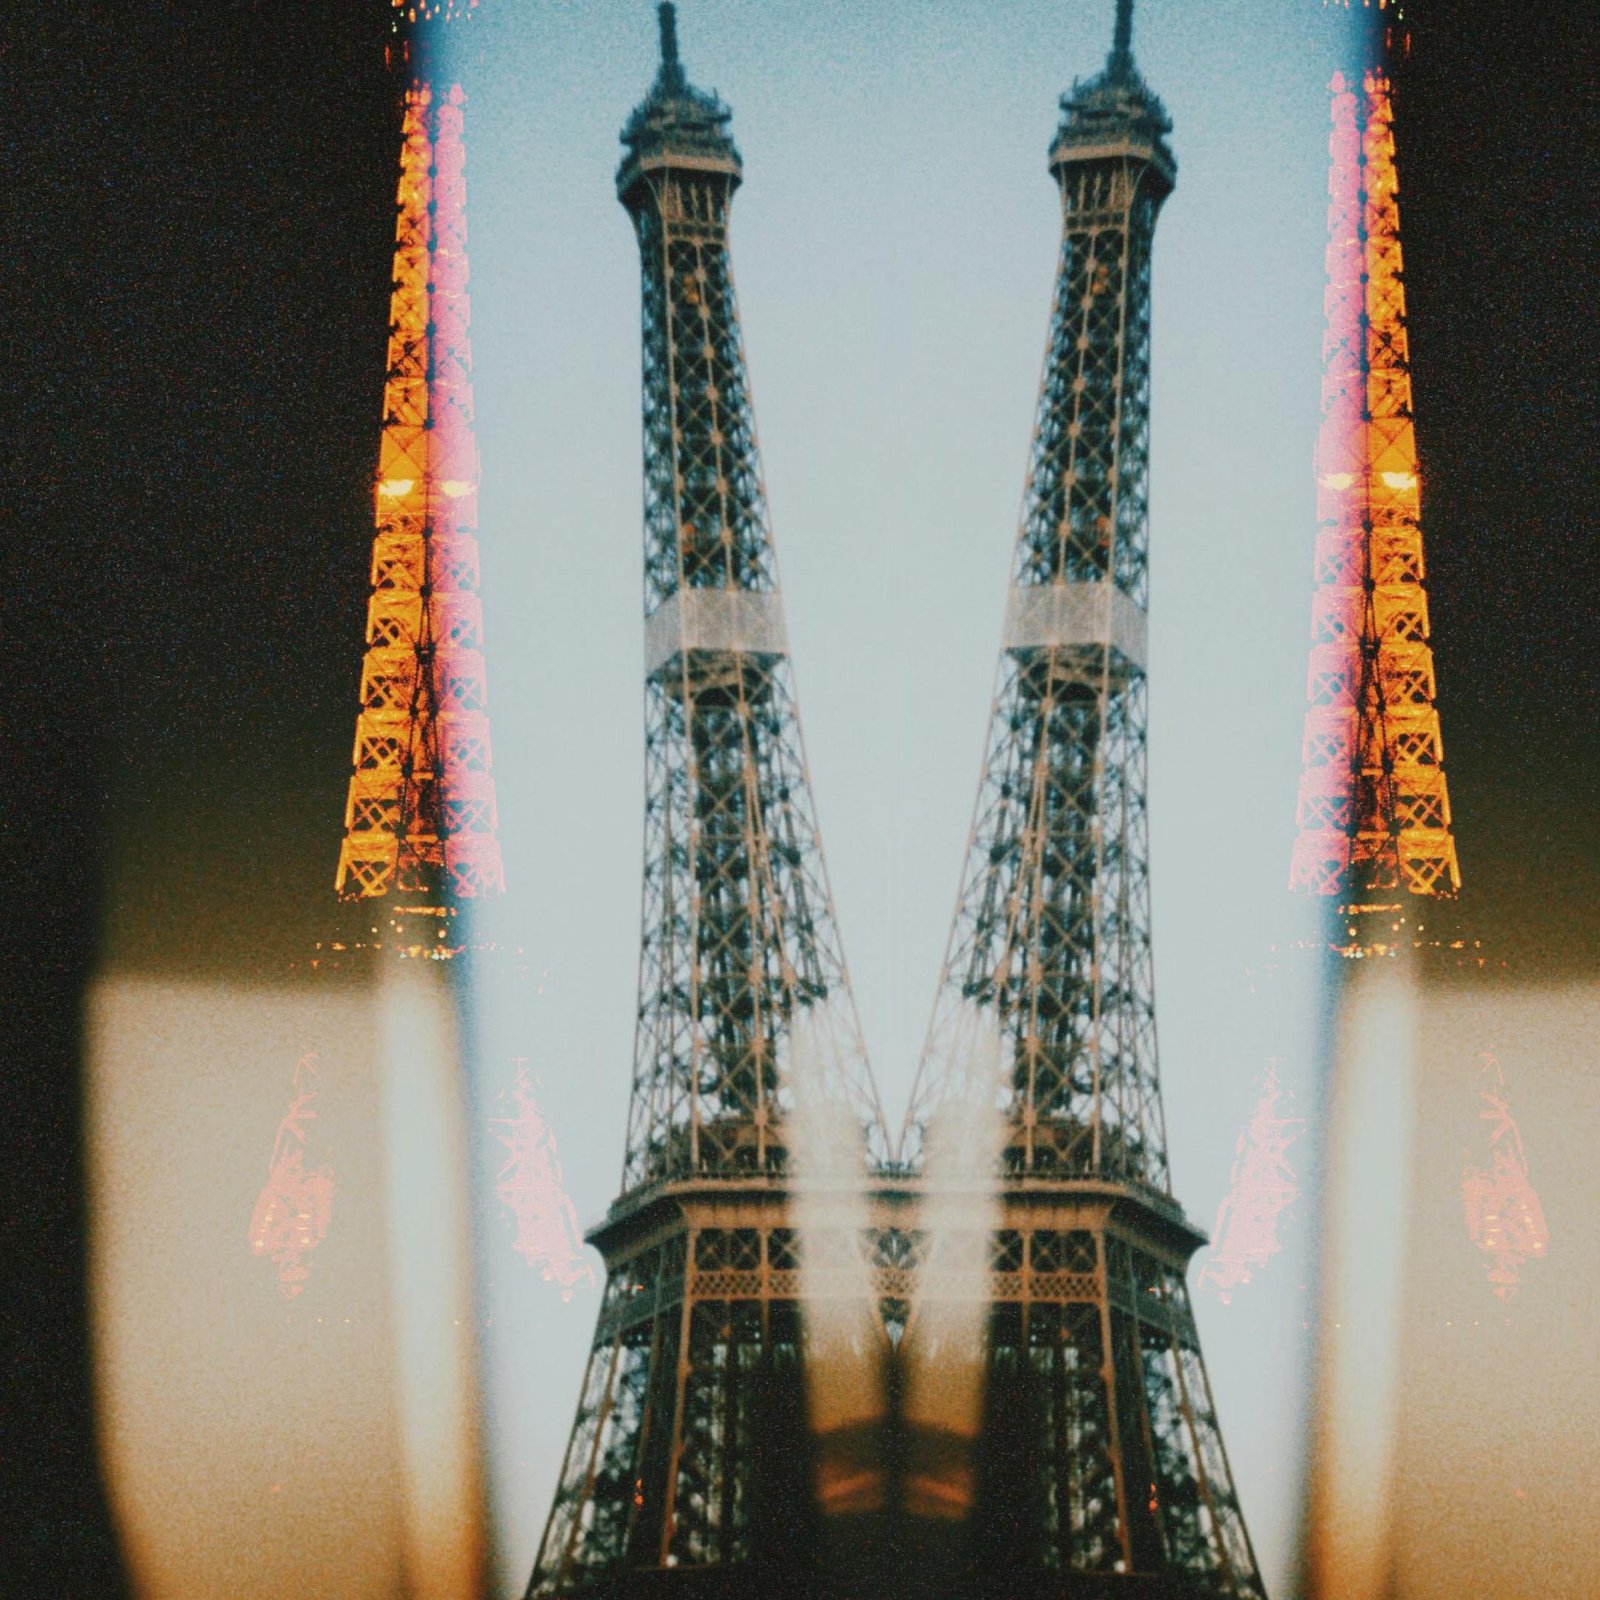 Eiffel Tower History